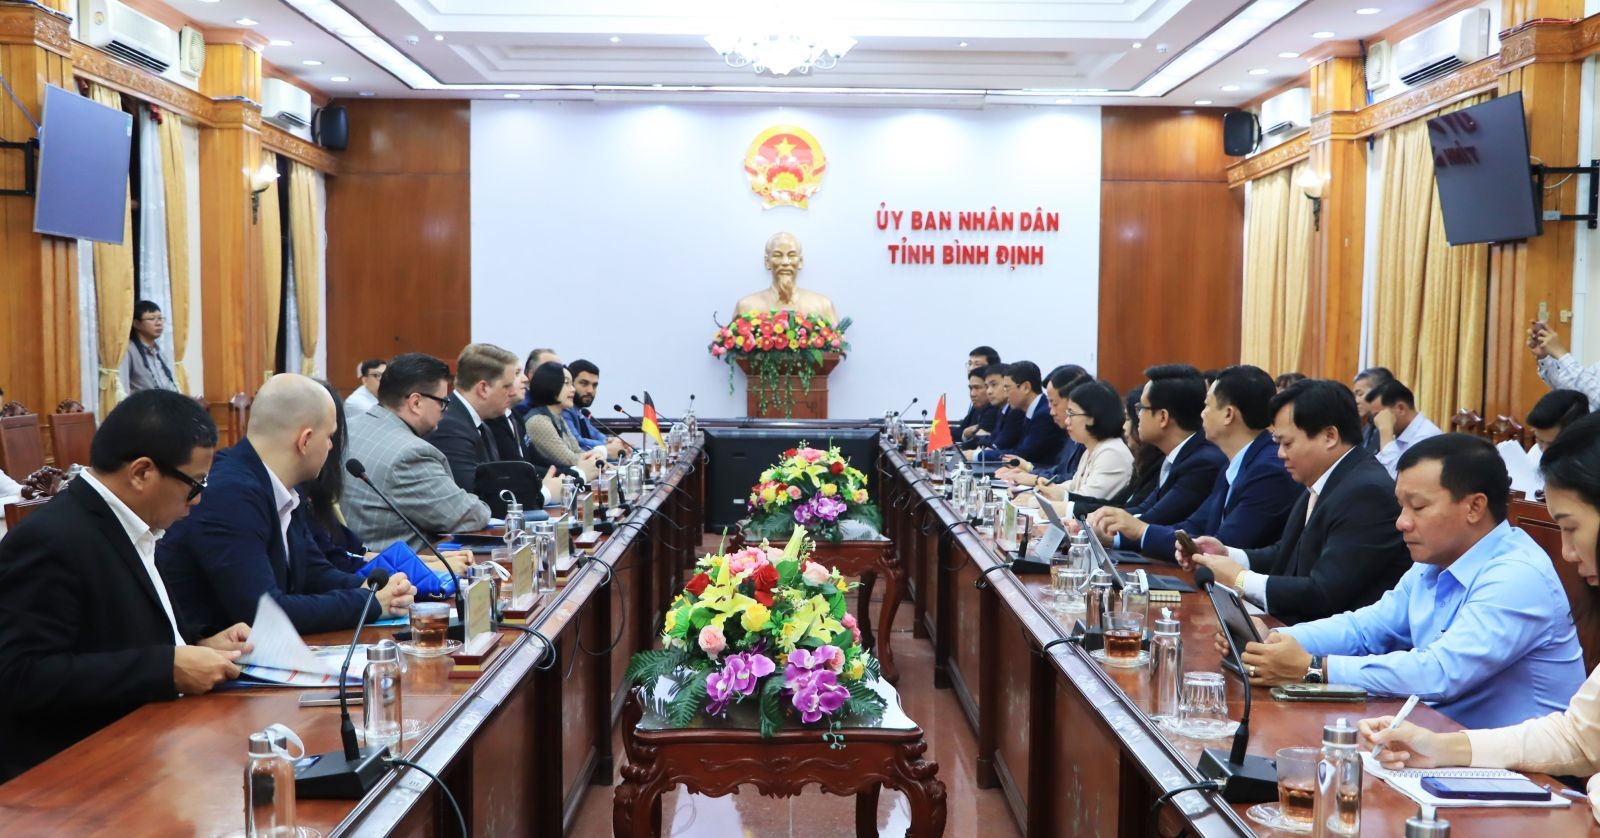 Chủ tịch UBND tỉnh Bình Định Phạm Anh Tuấn làm việc với Hiệp hội BWA. (Ảnh: binhdinh.gov.vn)